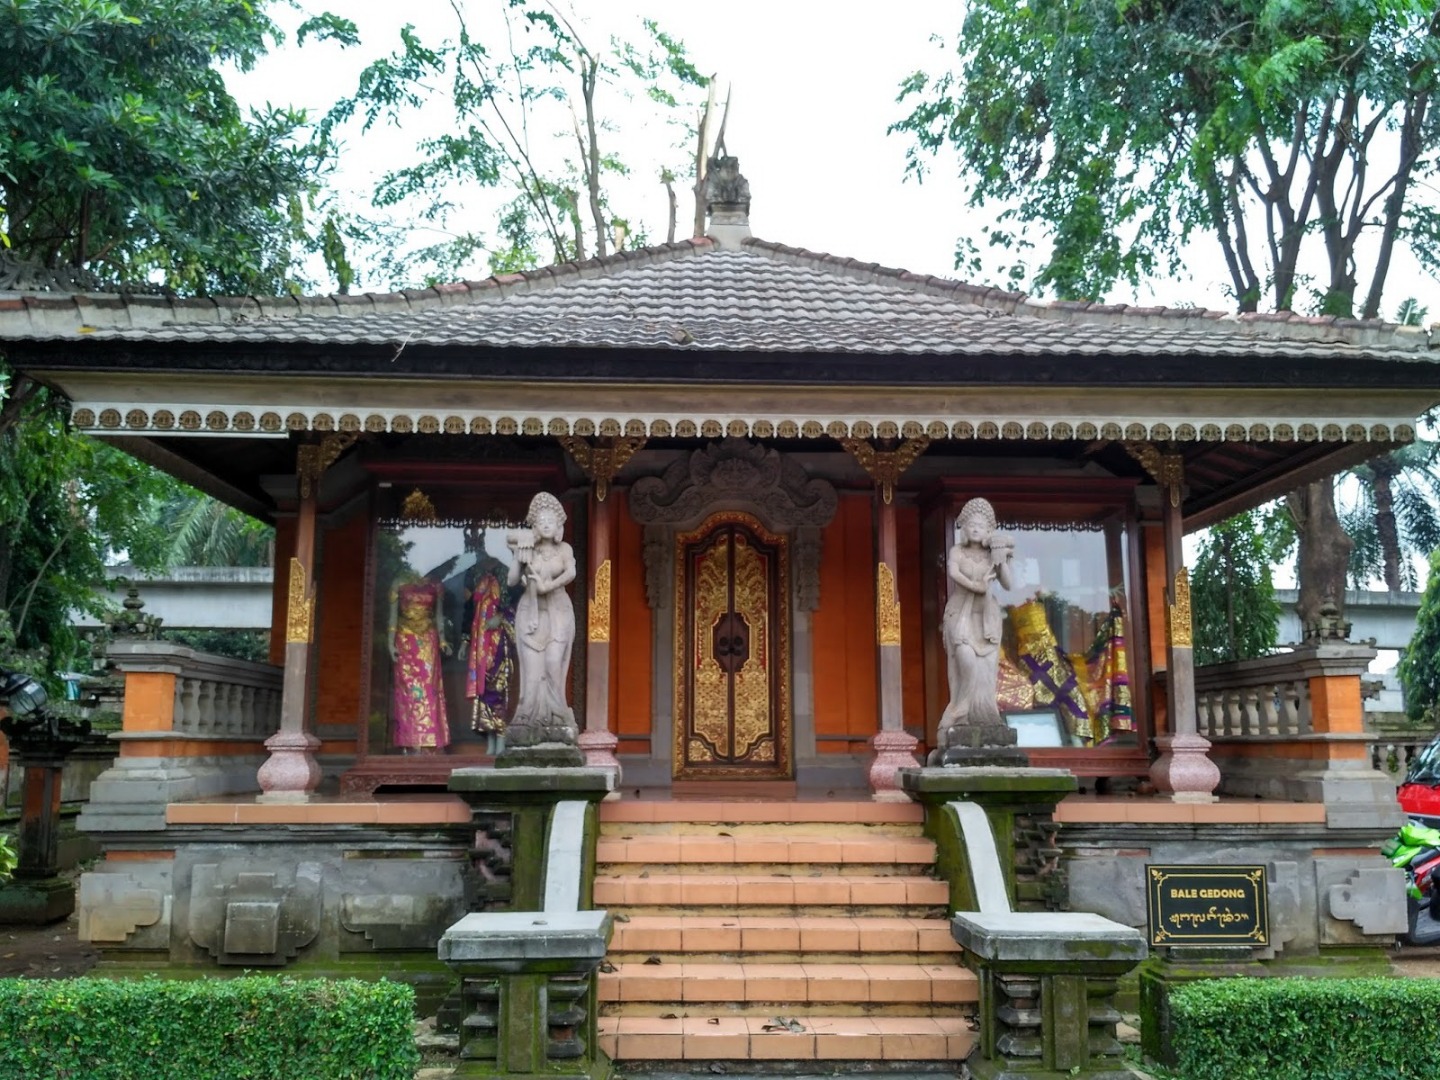 Apa itu Rumah Bali? Berikut 8 Fakta Unik dari Tempat Wisata Ini